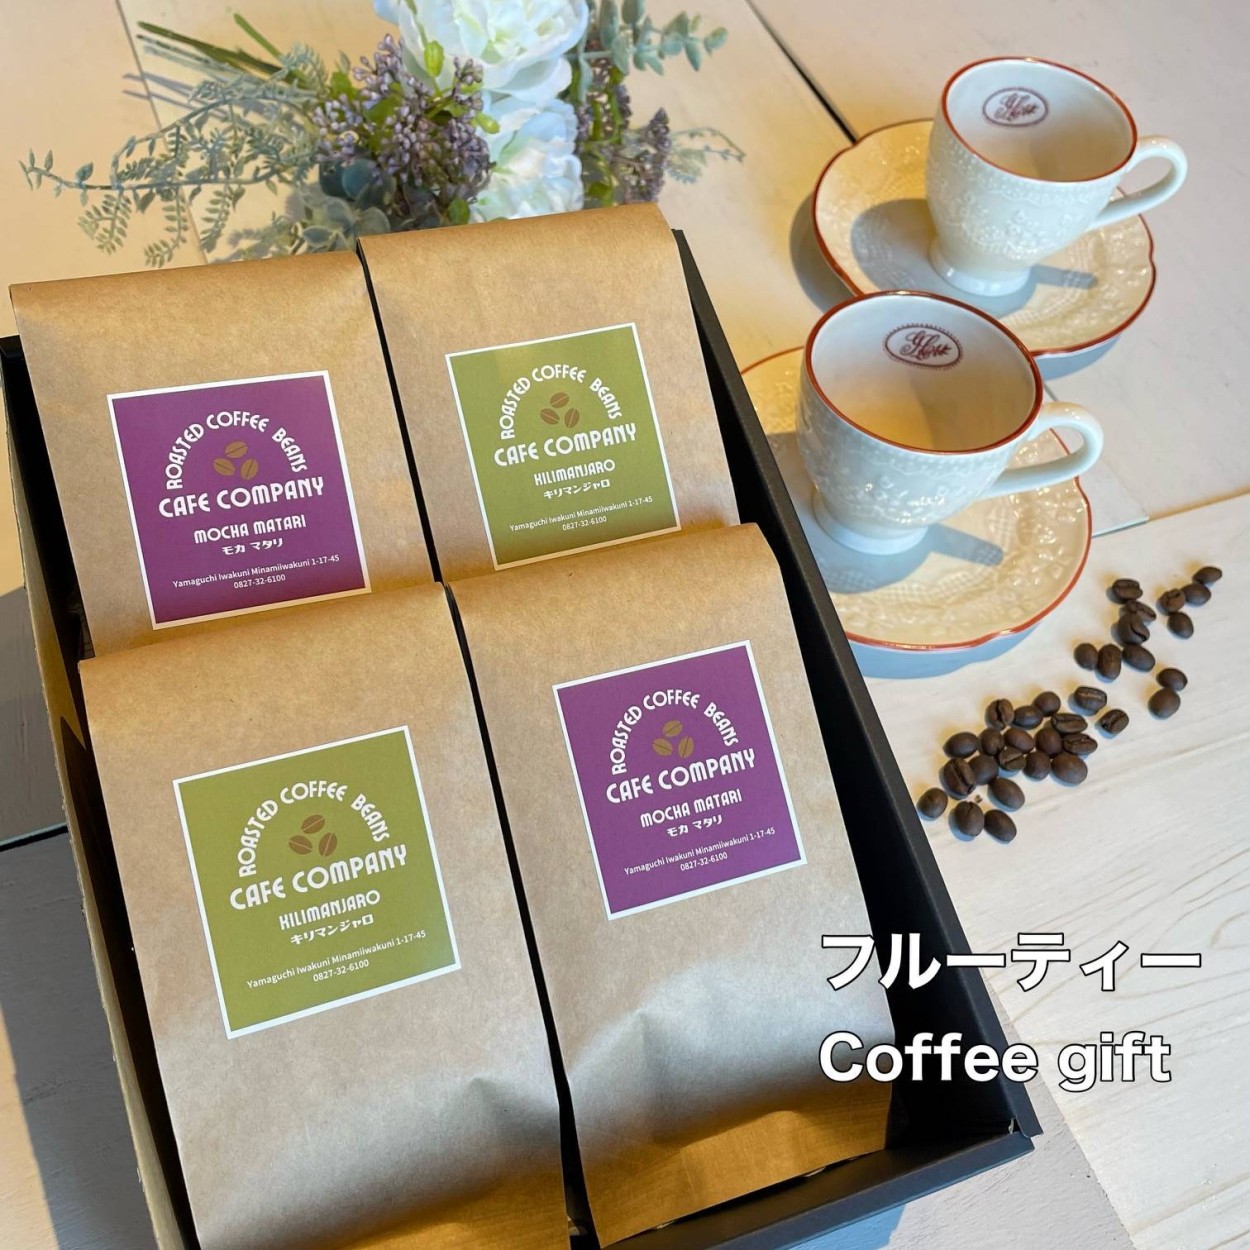 【感謝価格】 父の日 コーヒー豆 ギフト 4種類の スペシャリティ コーヒー詰め合わせ キリマンジャロ モカマタリ マンデリン パプアニューギニア 送料無料